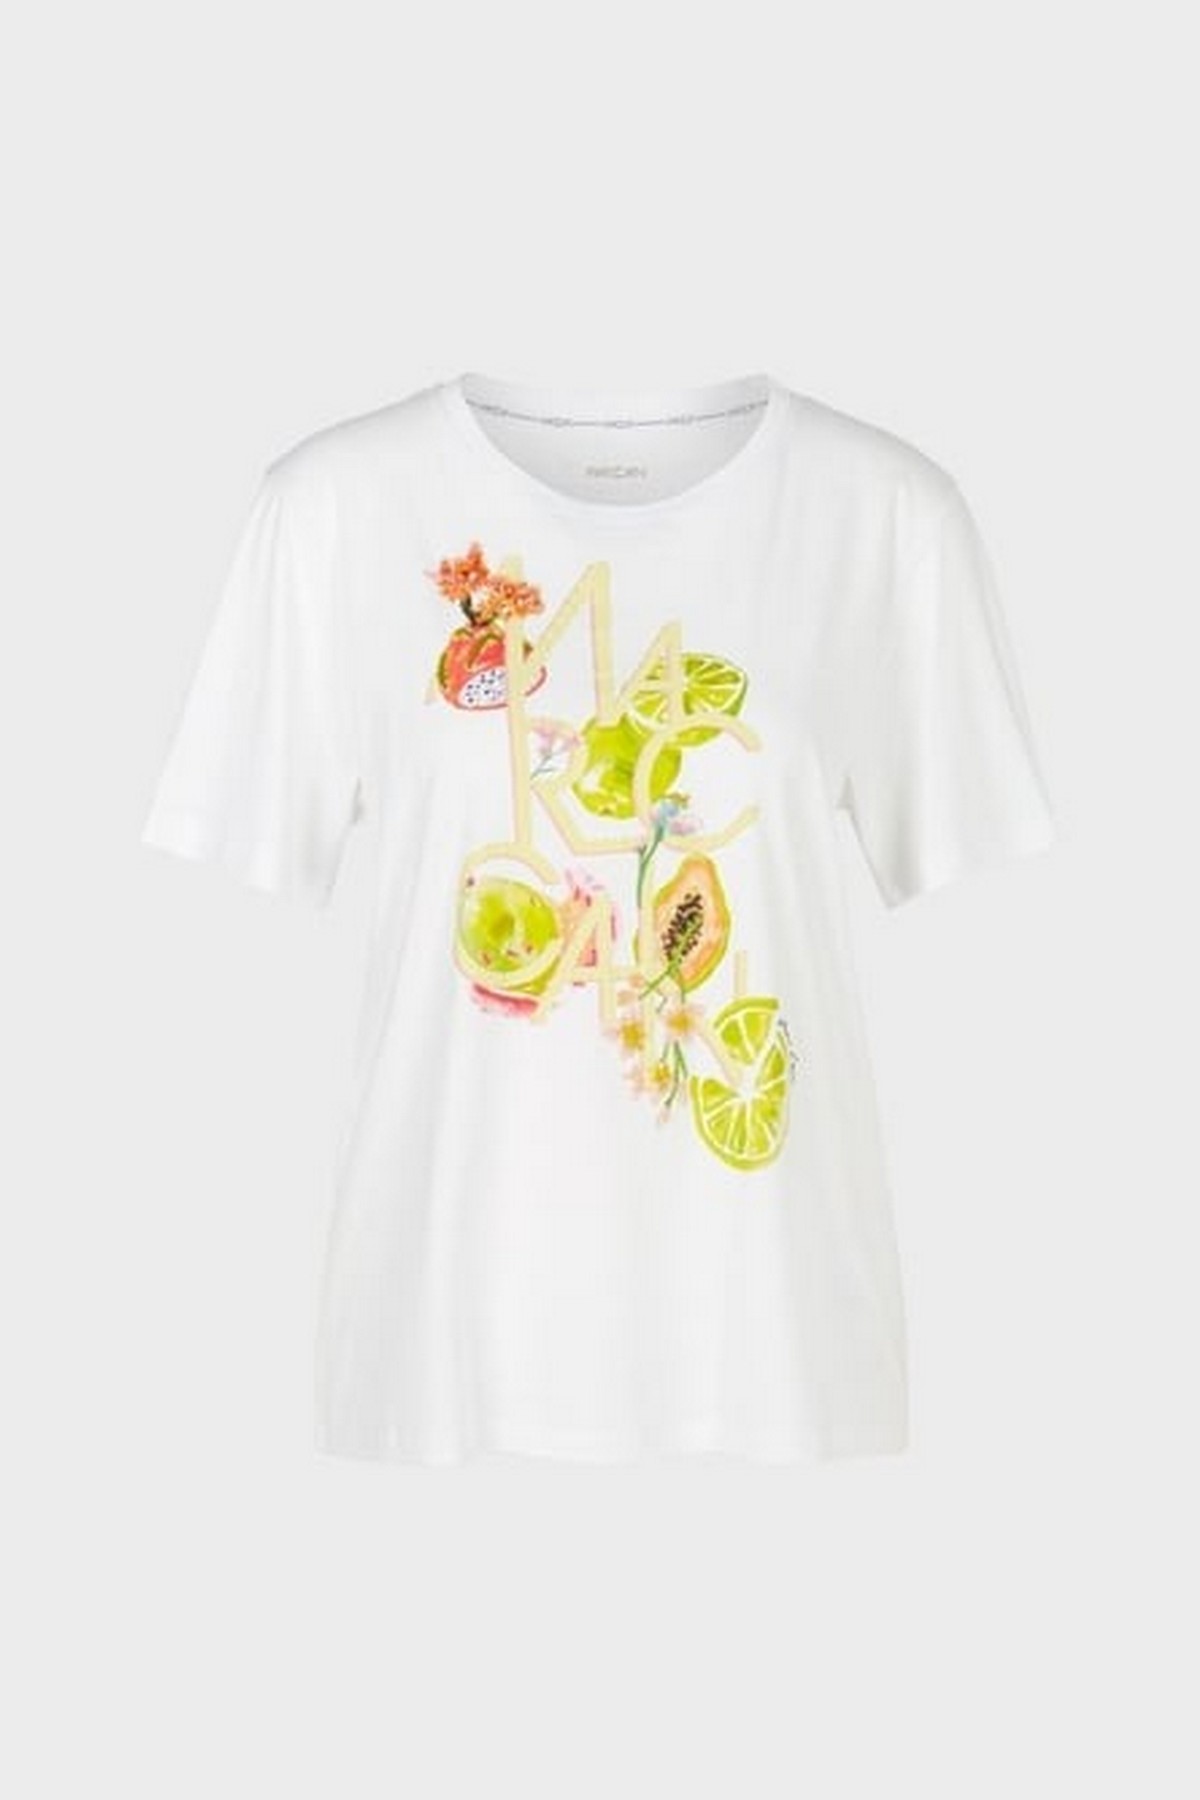 T-shirt print limoen in de kleur wit van het merk Marc Cain Collections